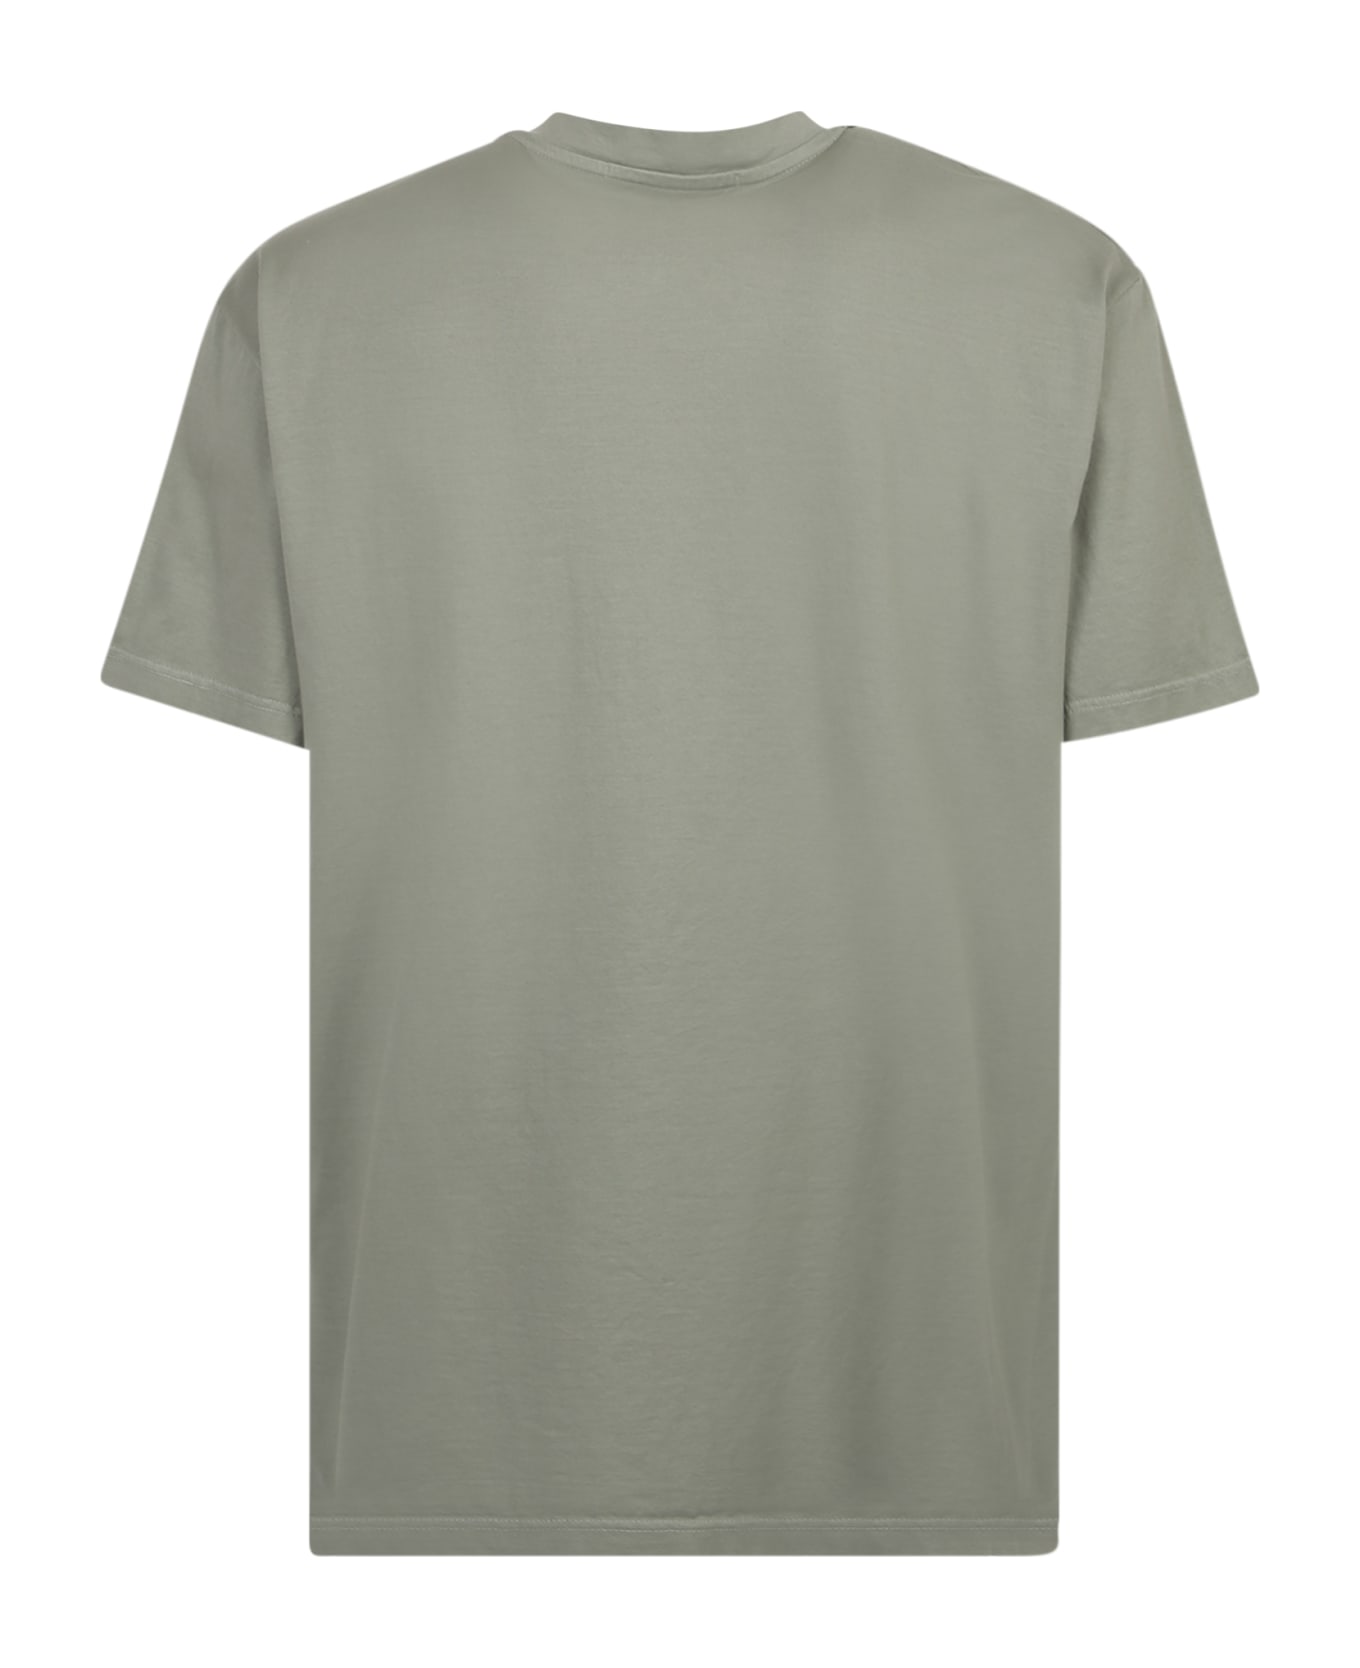 Giuseppe di Morabito William Cotton T-shirt - Green シャツ